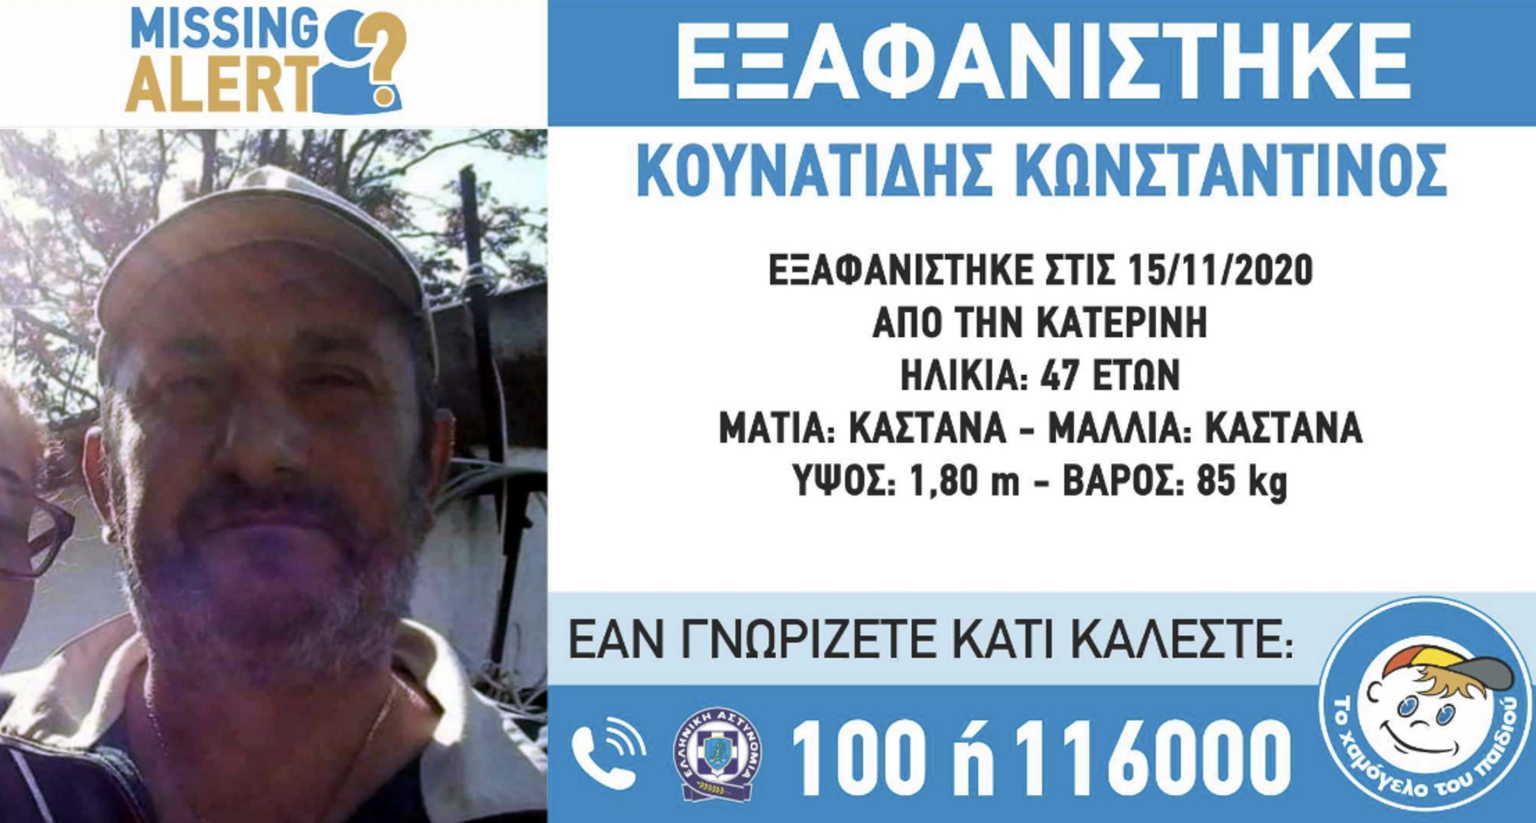 MISSING ALERT: Εξαφανίστηκε από την περιοχή της Κατερίνης, ο Κωνσταντίνος Κουνατίδης, 47 ετών